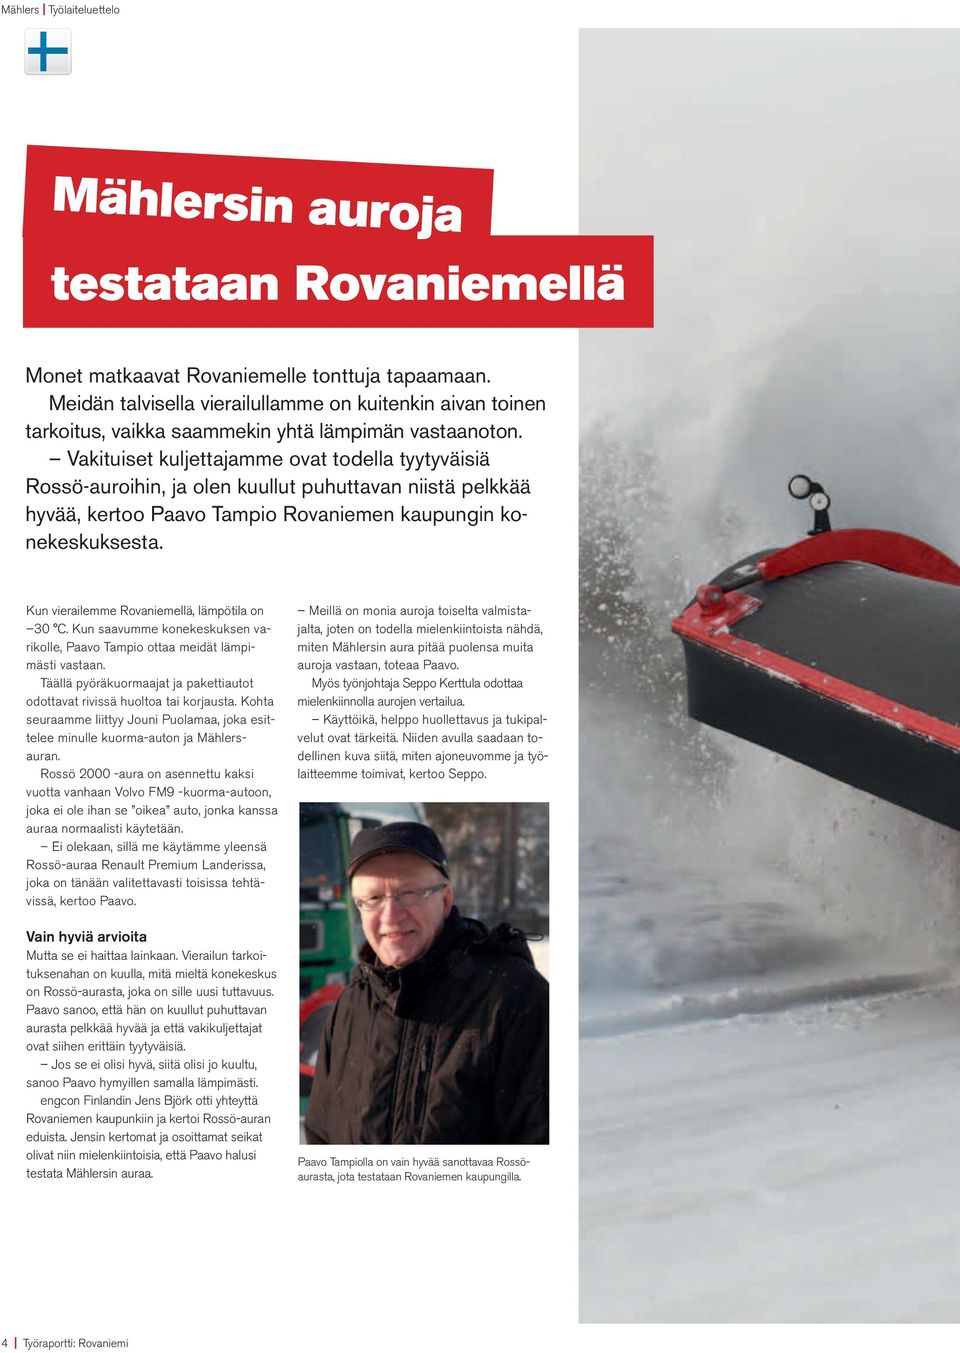 Vakituiset kuljettajamme ovat todella tyytyväisiä Rossö-auroihin, ja olen kuullut puhuttavan niistä pelkkää hyvää, kertoo Paavo Tampio Rovaniemen kaupungin konekeskuksesta.